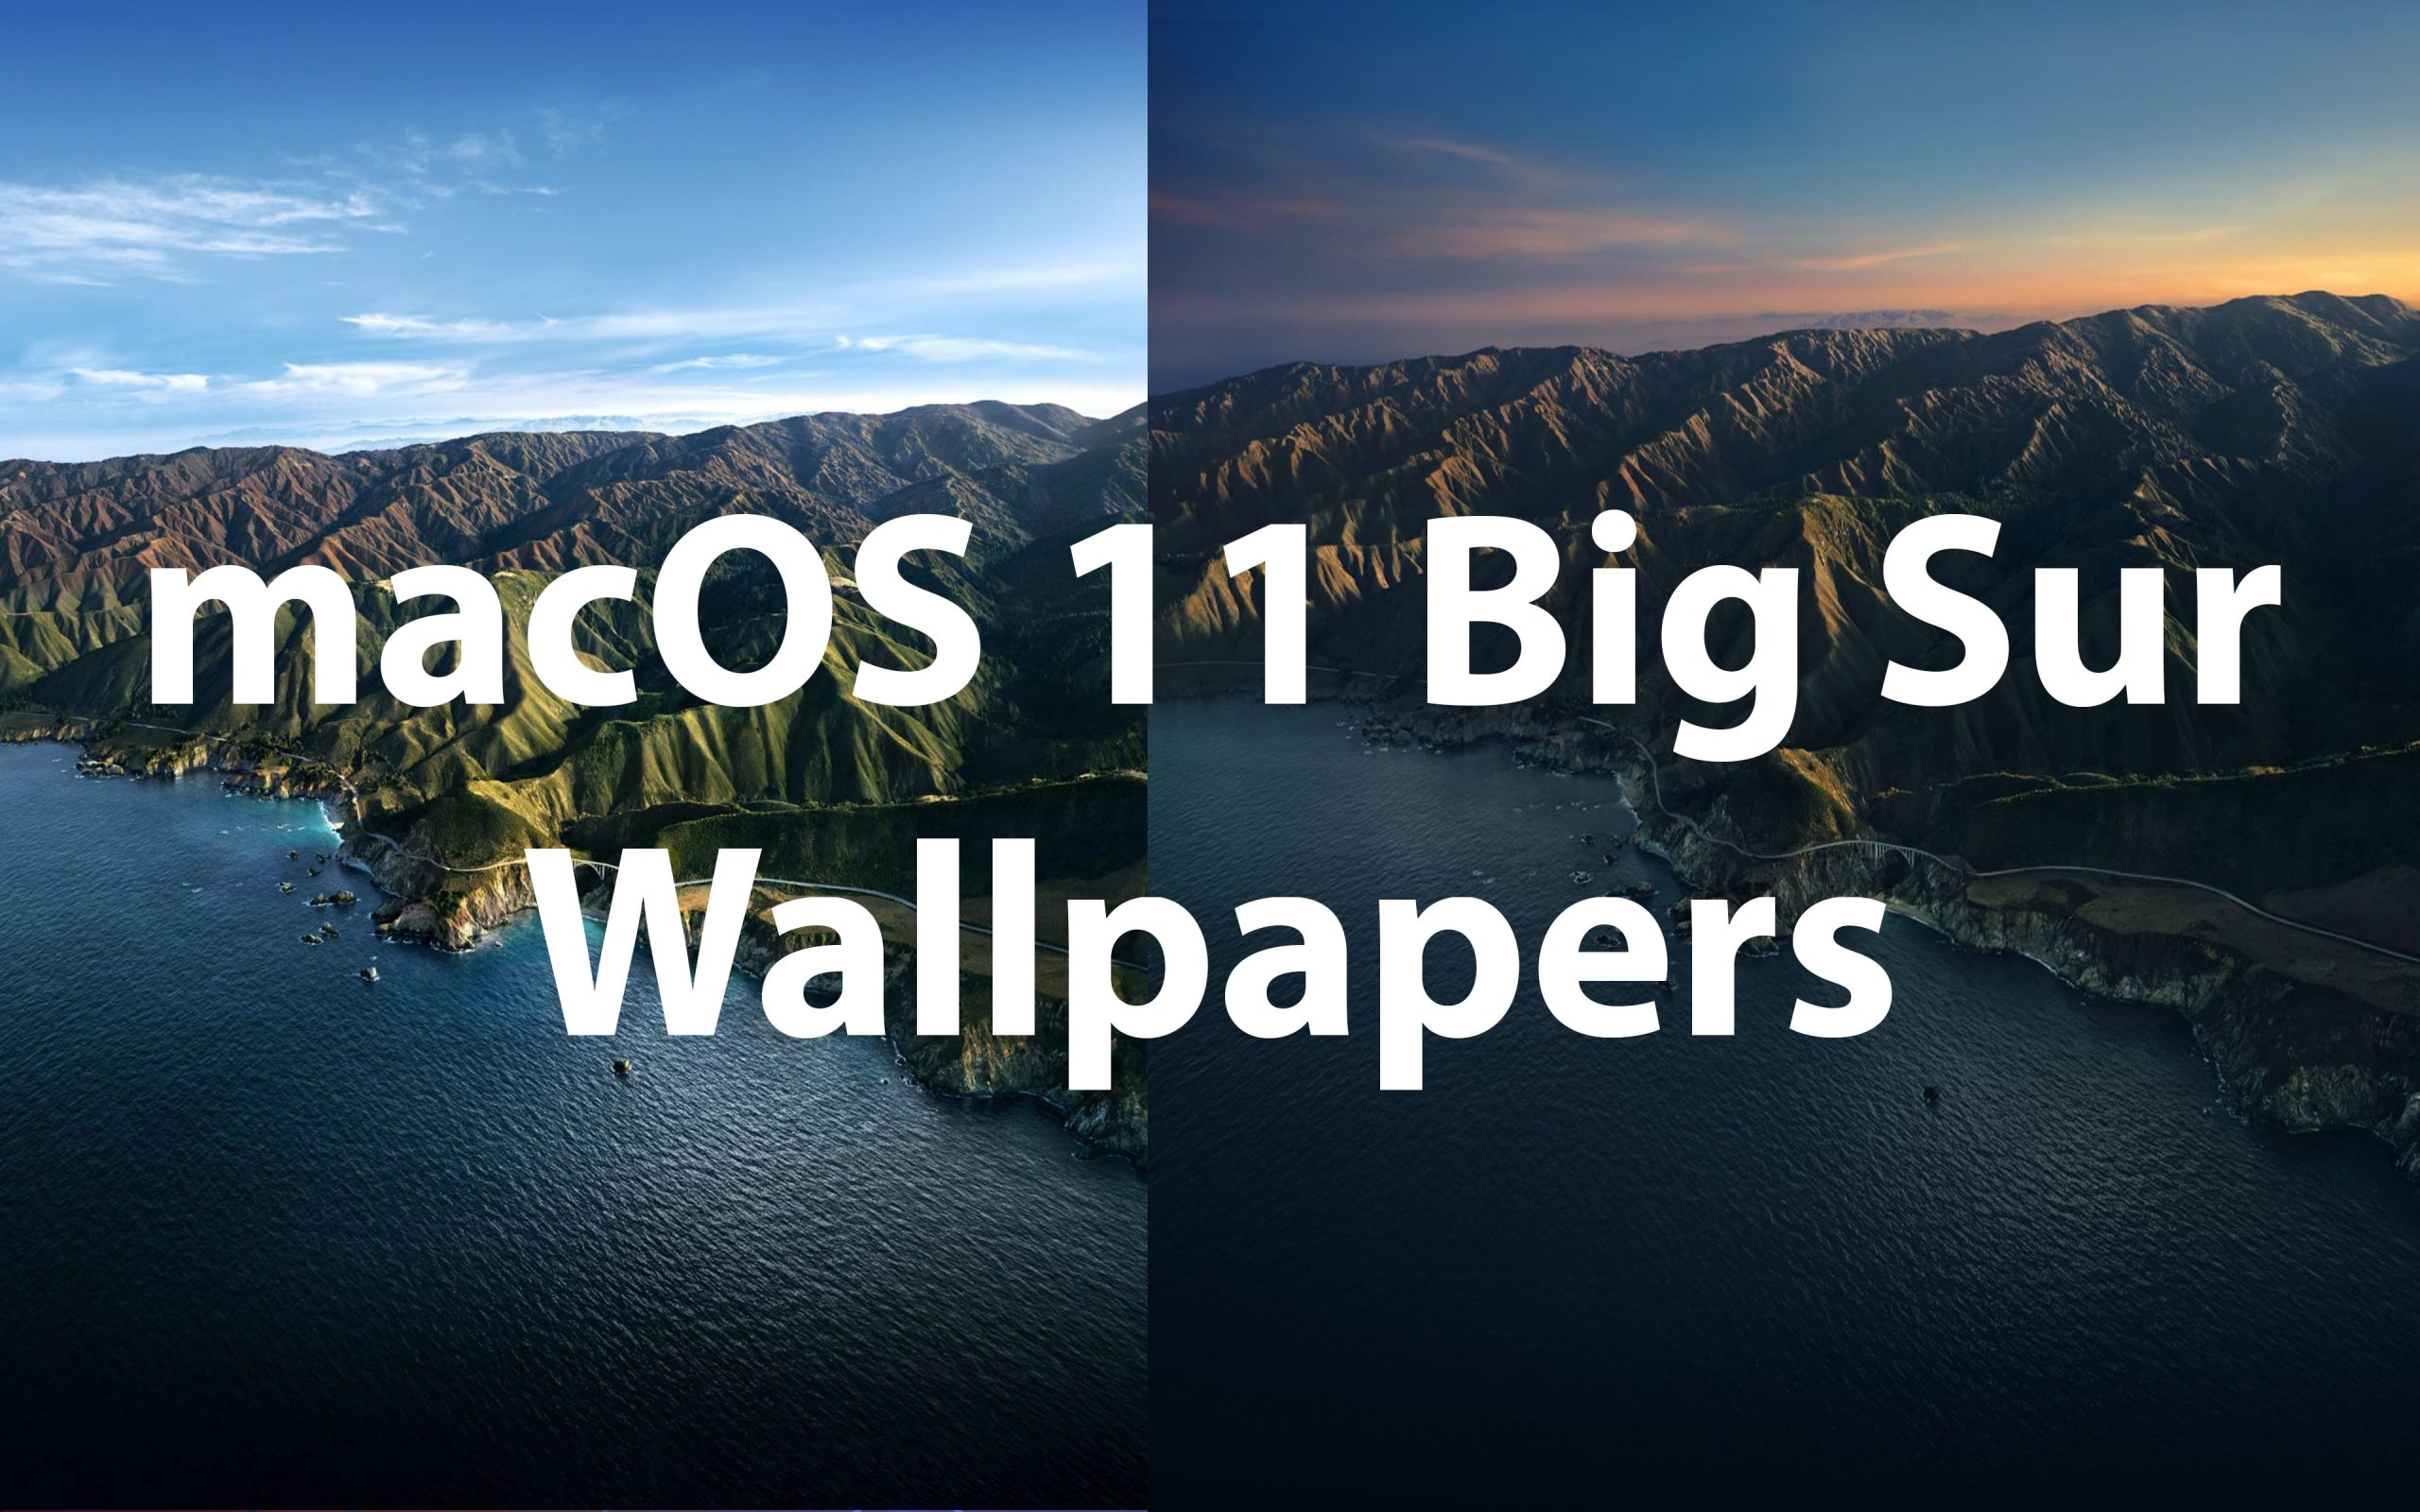 Download Macos Big Sur Hd Wallpapers For Desktop Iphone Ipad